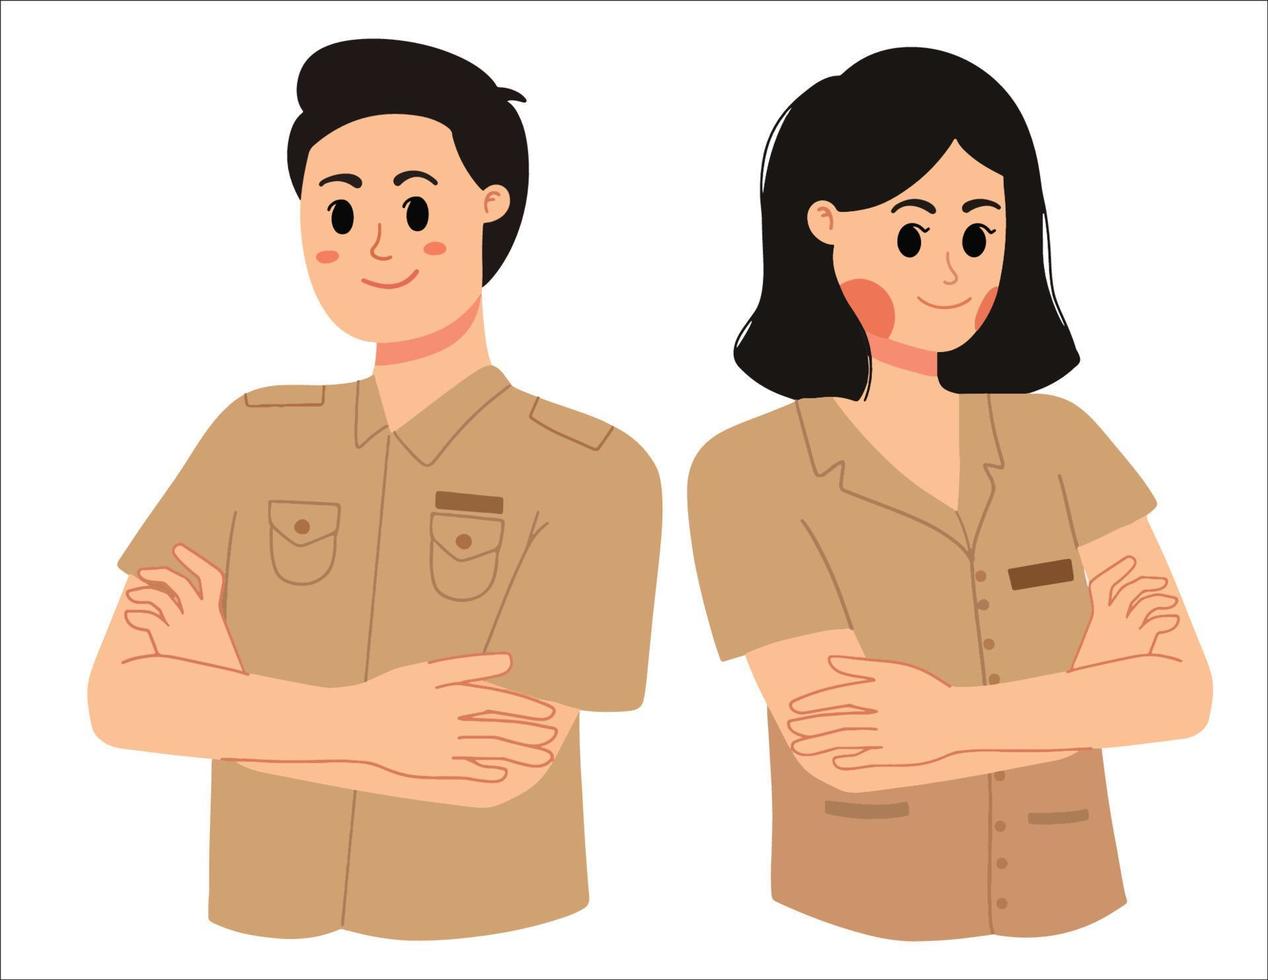 een portret van ambtenaar man en vrouw Indonesische pns werknemer illustratie vector